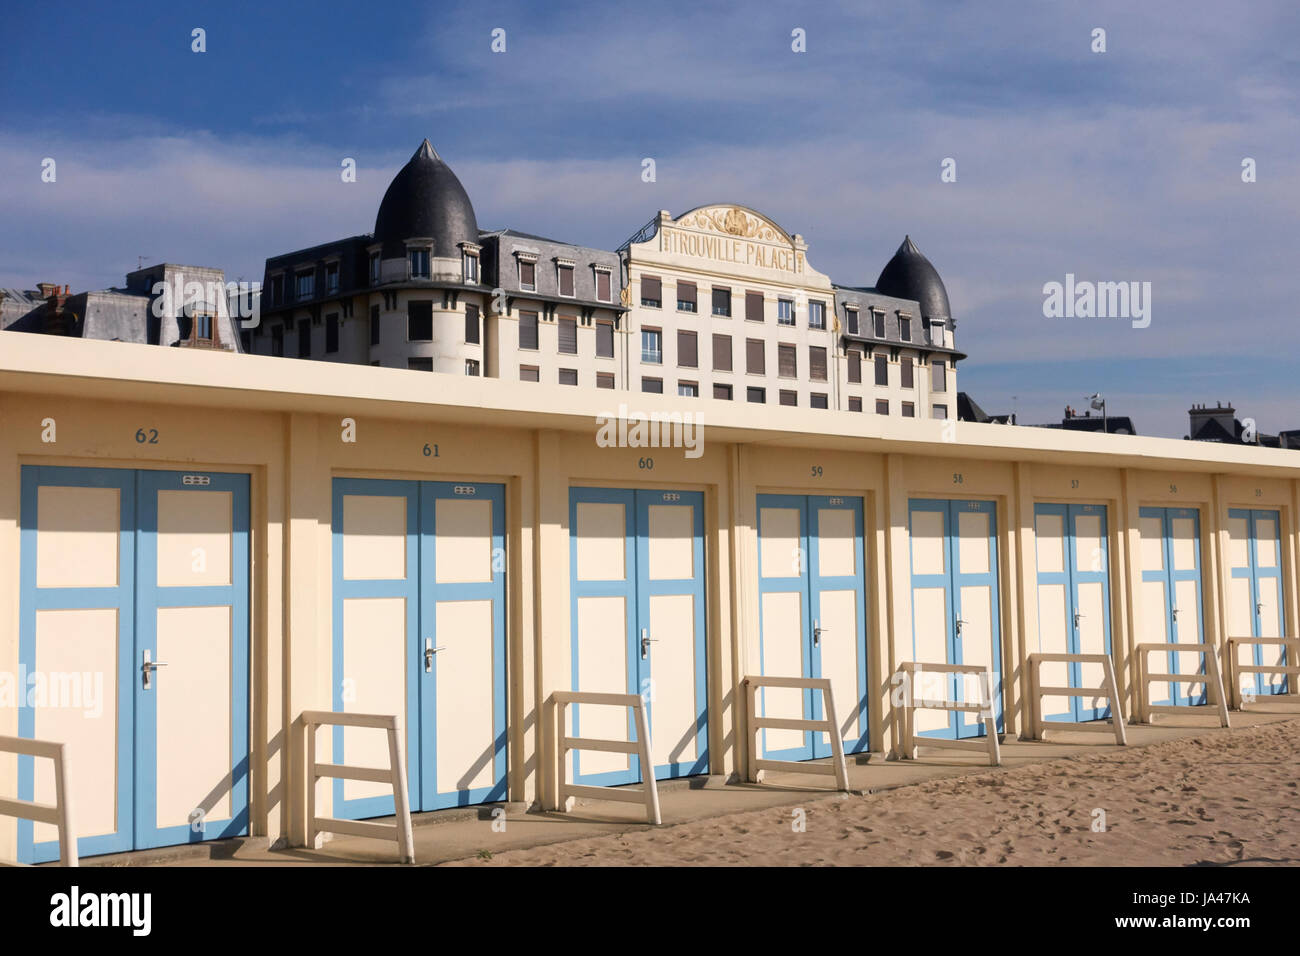 Trouville-Sur-Mer, Normandie Frankreich. Blick auf den Beach-Club mit dem alten Trouville Palace Casino Gebäude im Hintergrund Stockfoto